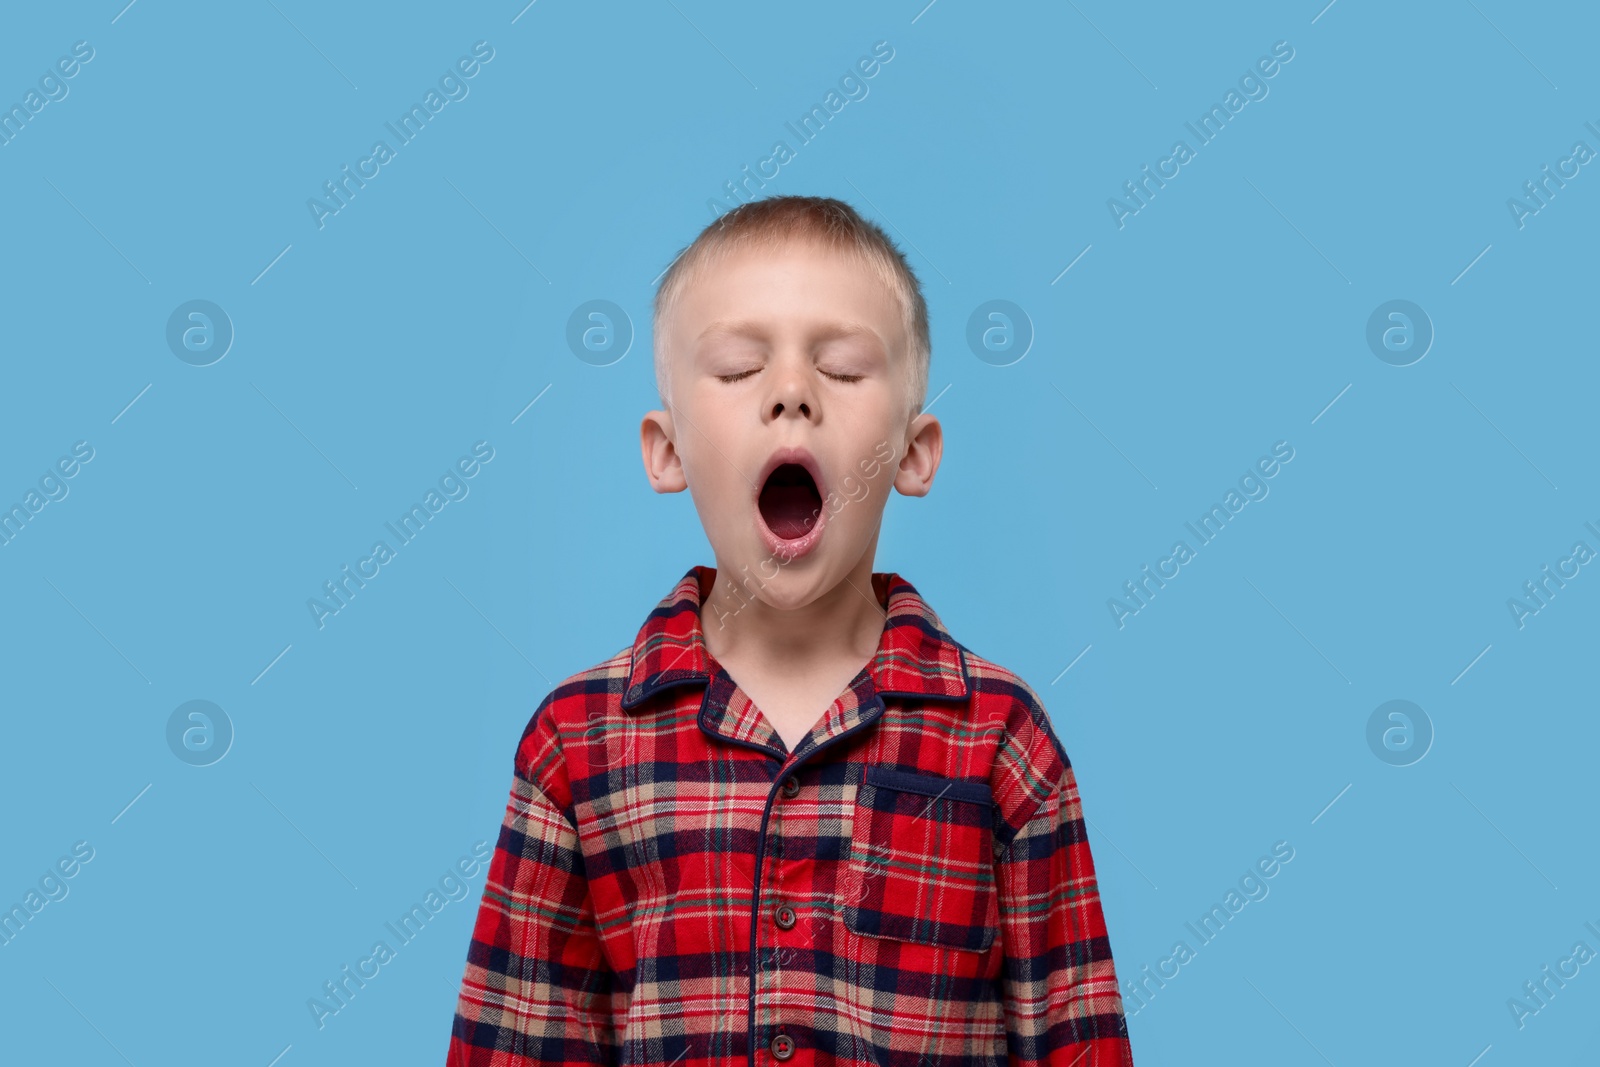 Photo of Sleepy boy yawning on light blue background. Insomnia problem